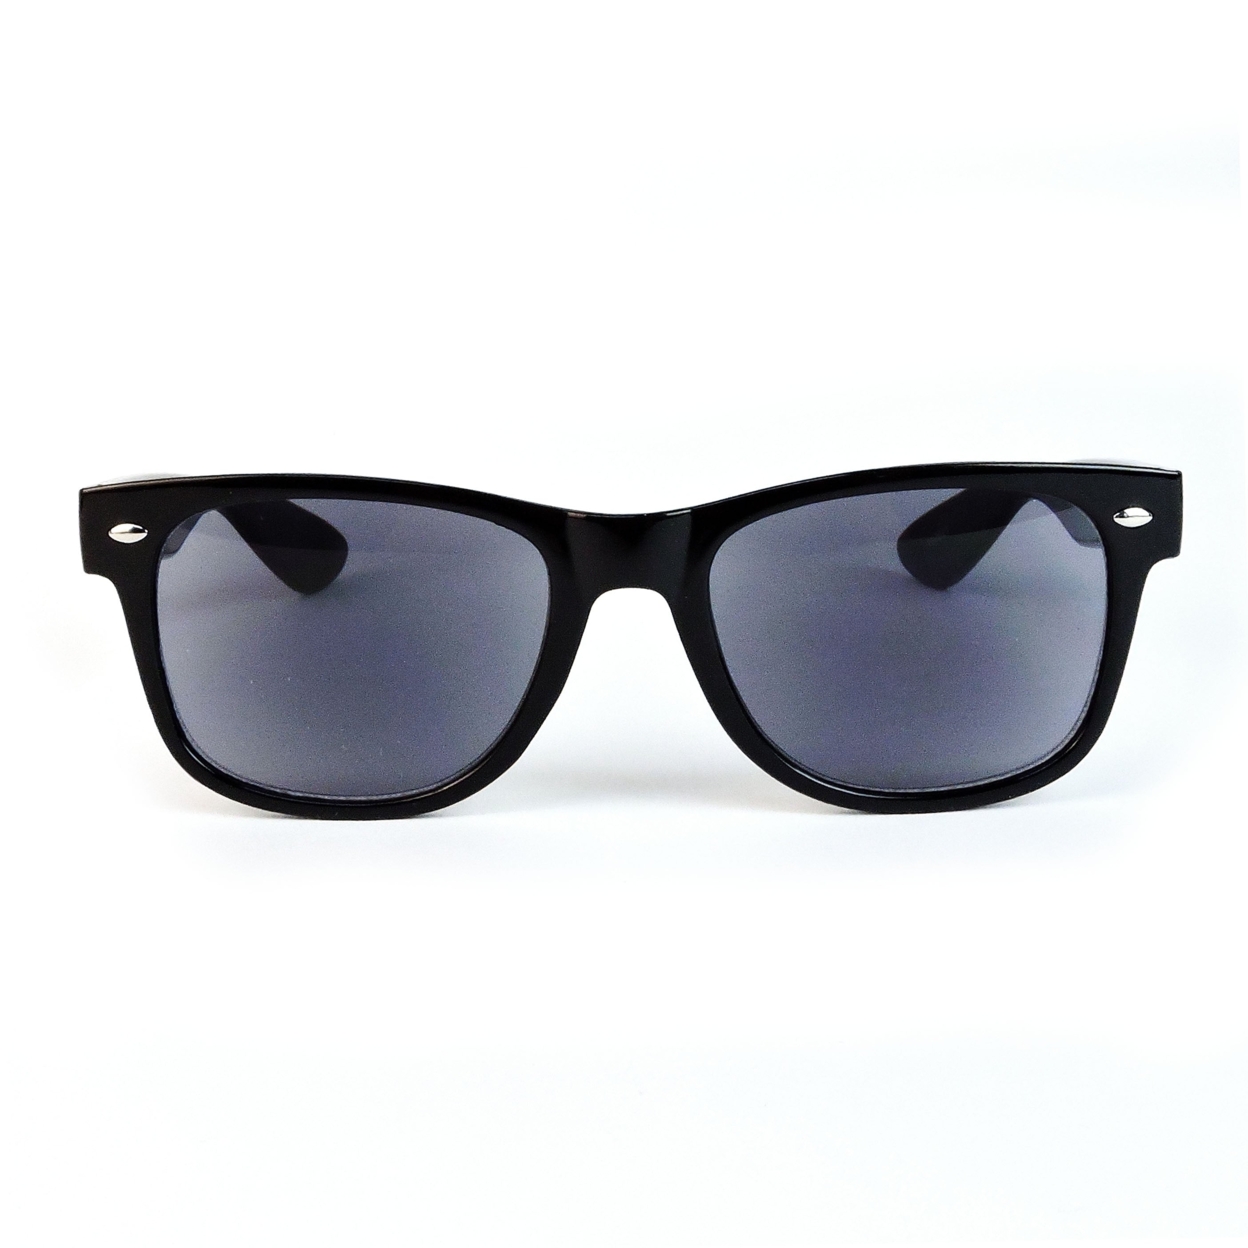 Sun Readers Full Lens Classic Frame 80's Retro Style Reading Sunglasses - Tortoise, +2.25